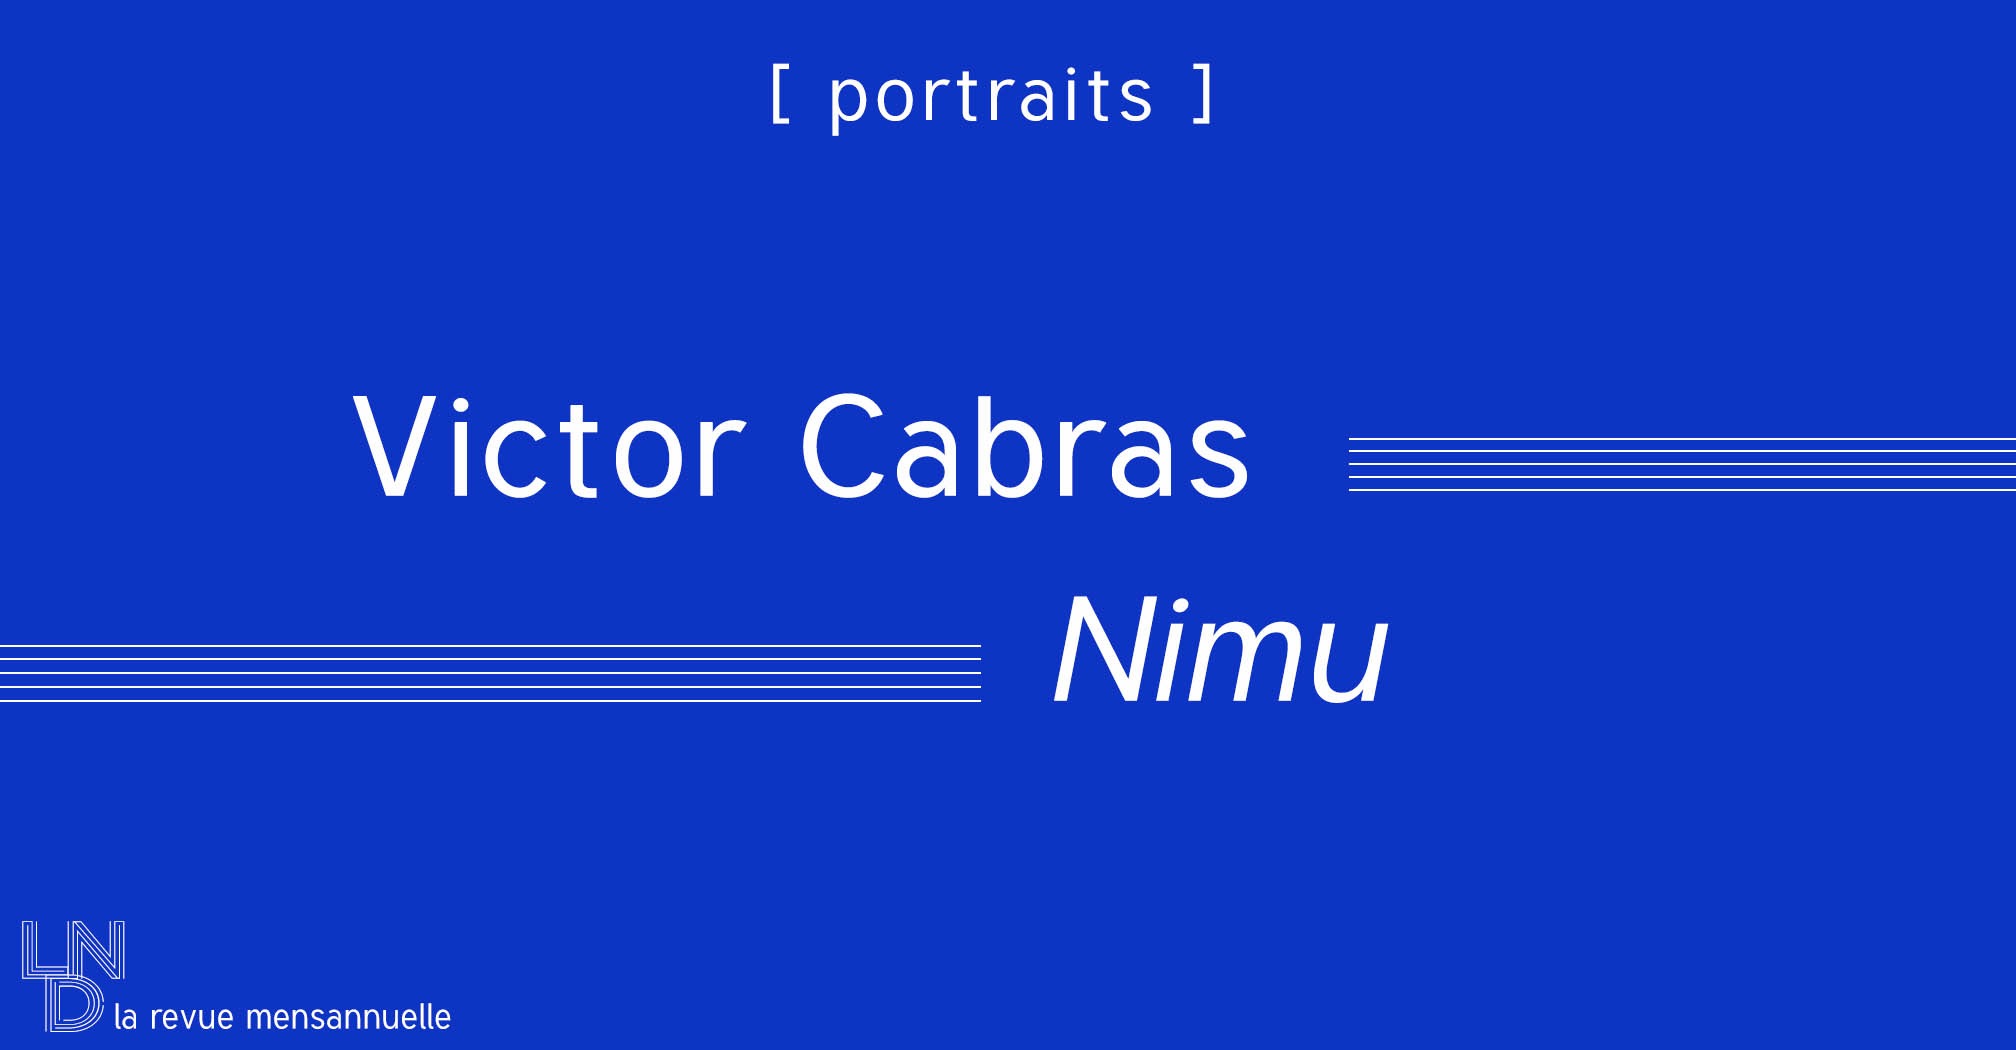 [Portrait] Nimu - Victor Cabras